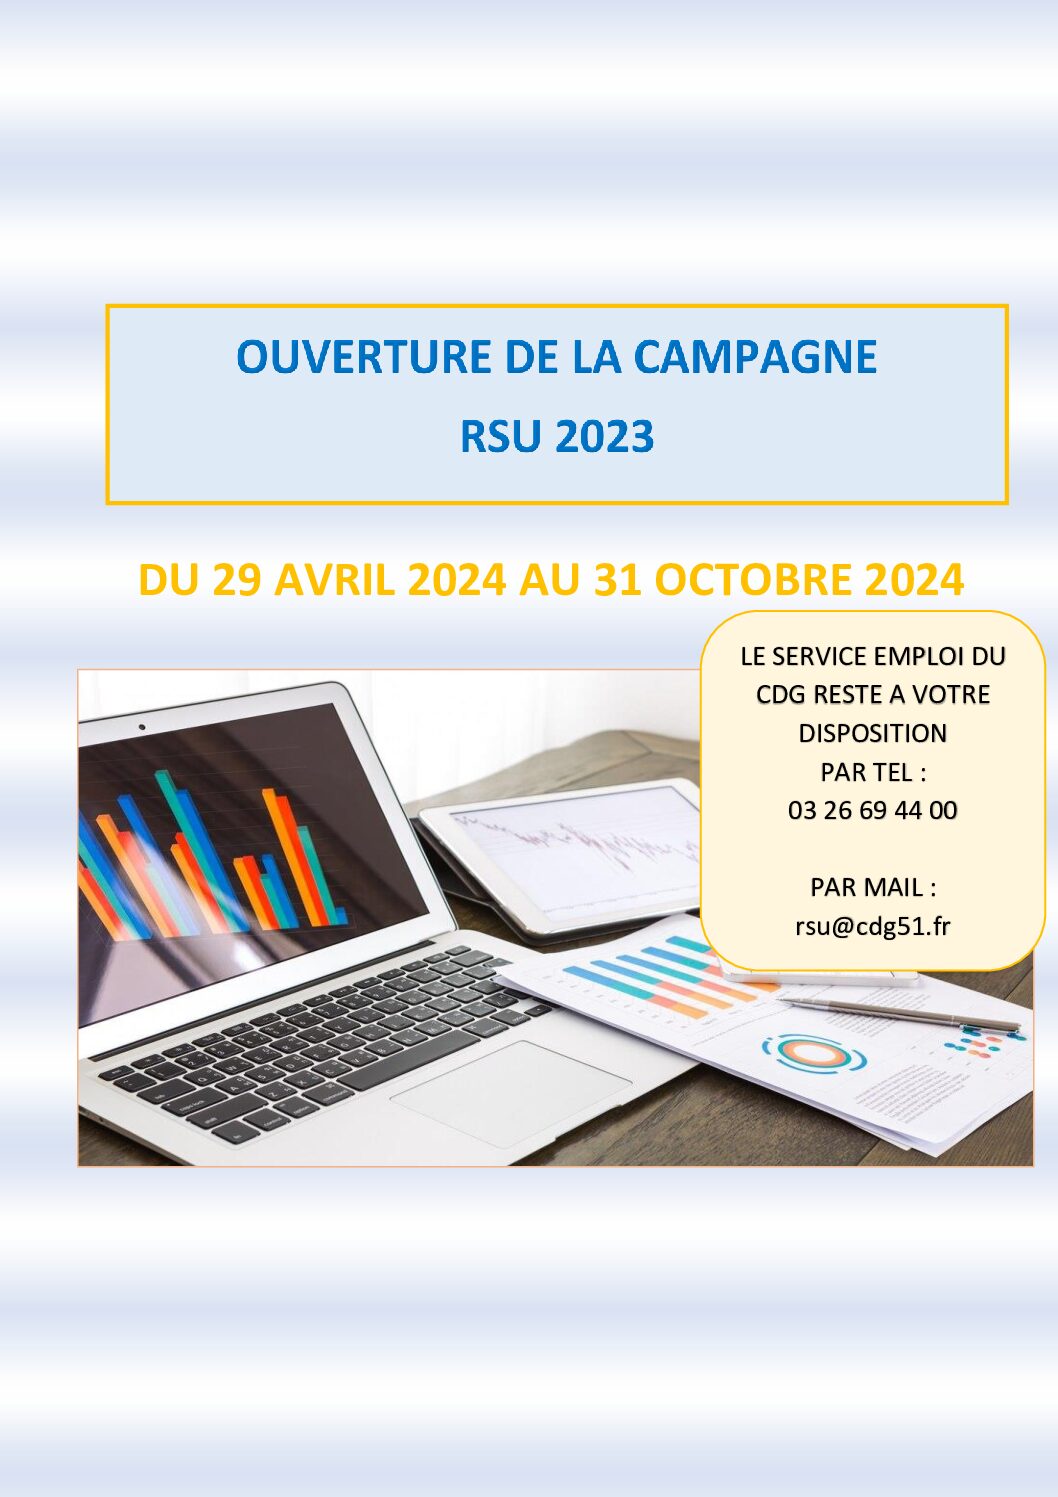 OUVERTURE DE LA CAMPAGNE RSU 2023 A PARTIR DU 29 AVRIL 2024